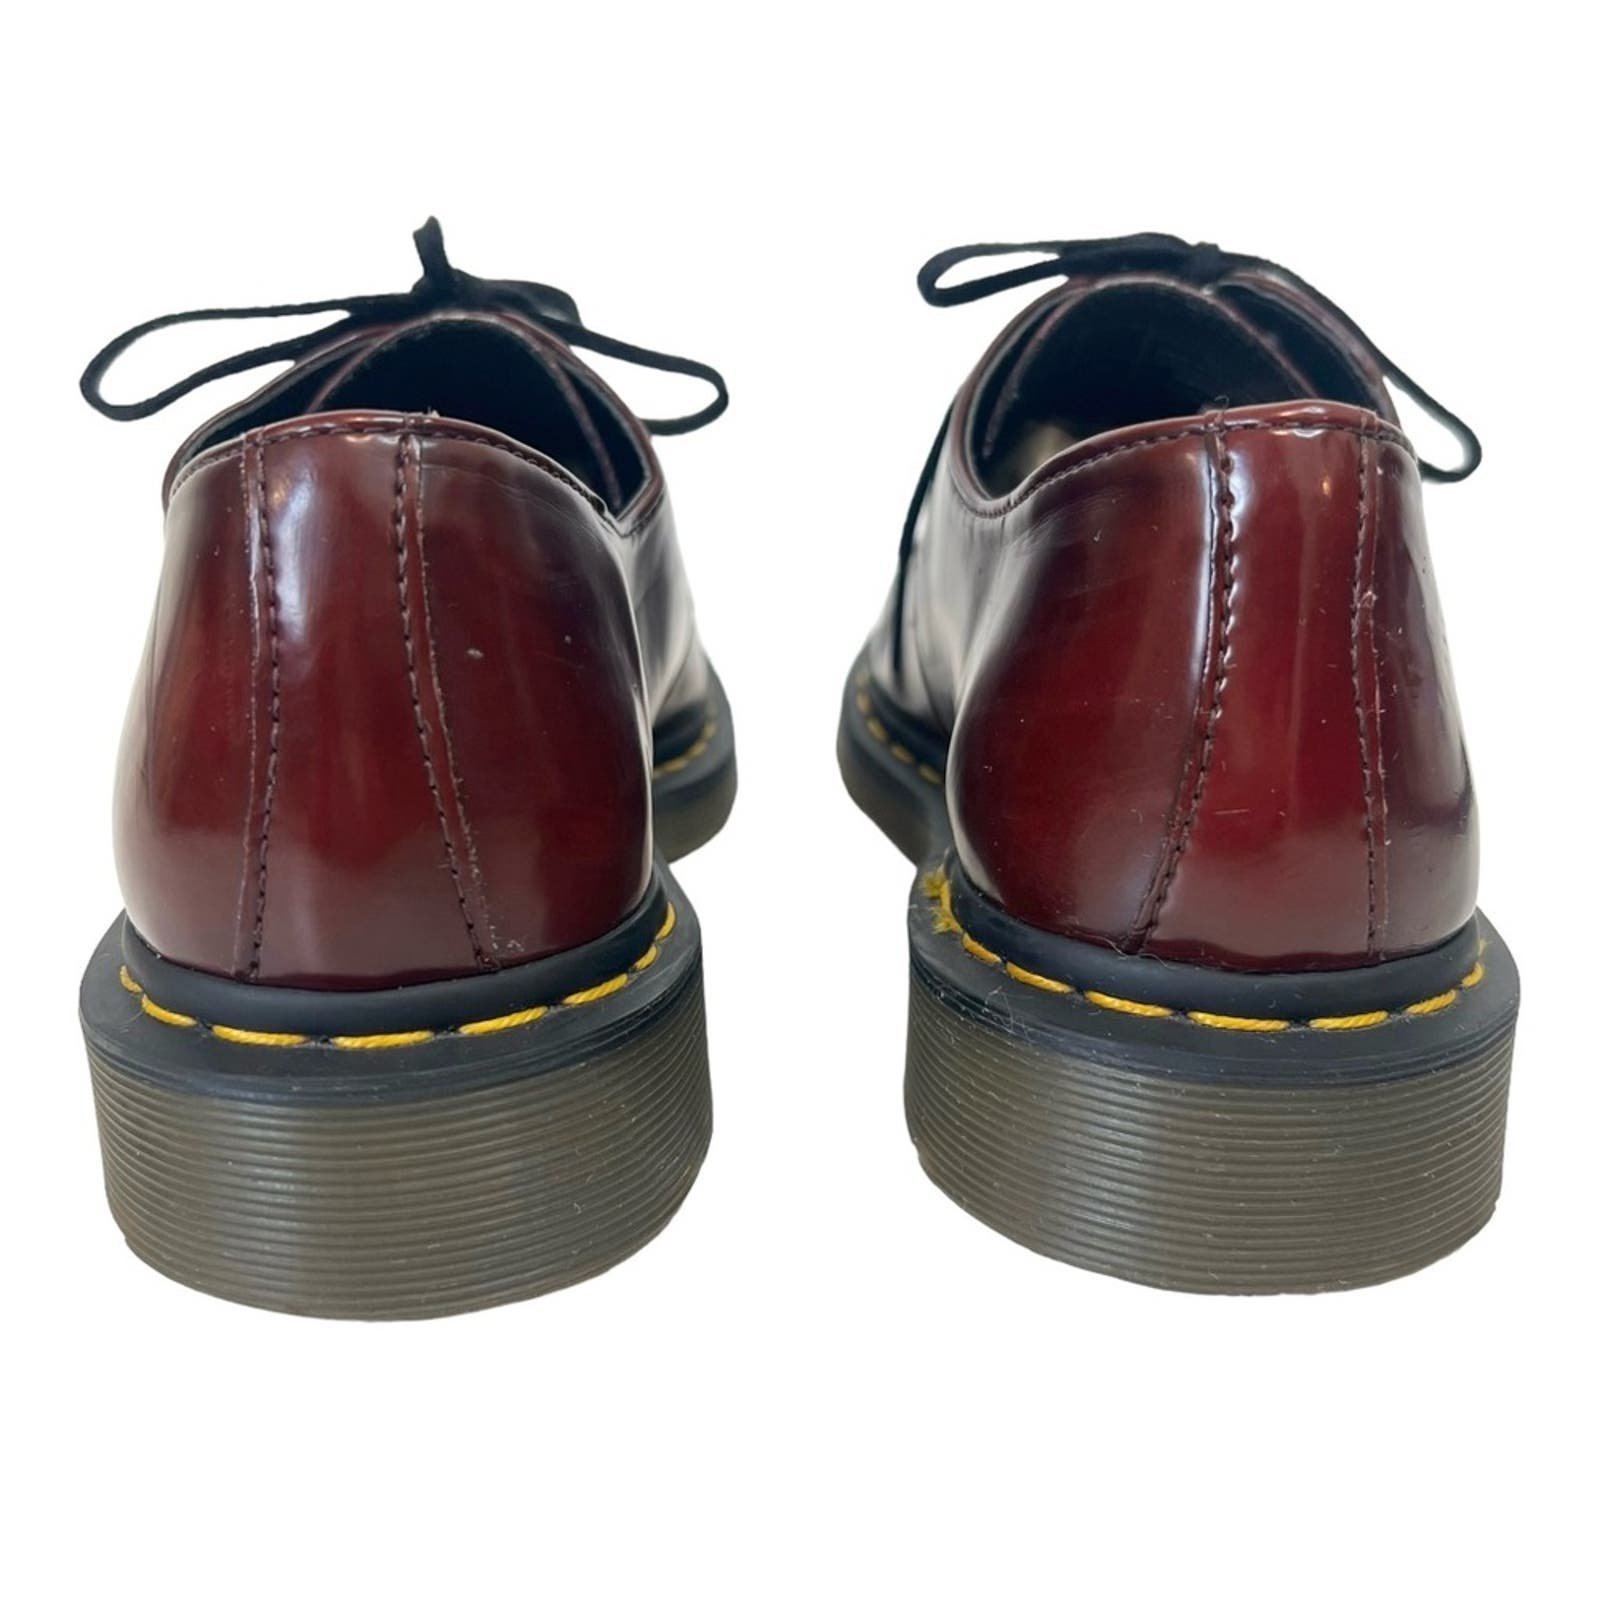 Dr. Martens 1461 Smooth Leather Wine Burgundy Vegan Oxford Loafer Lace Up Shoes ASjvAlfMd